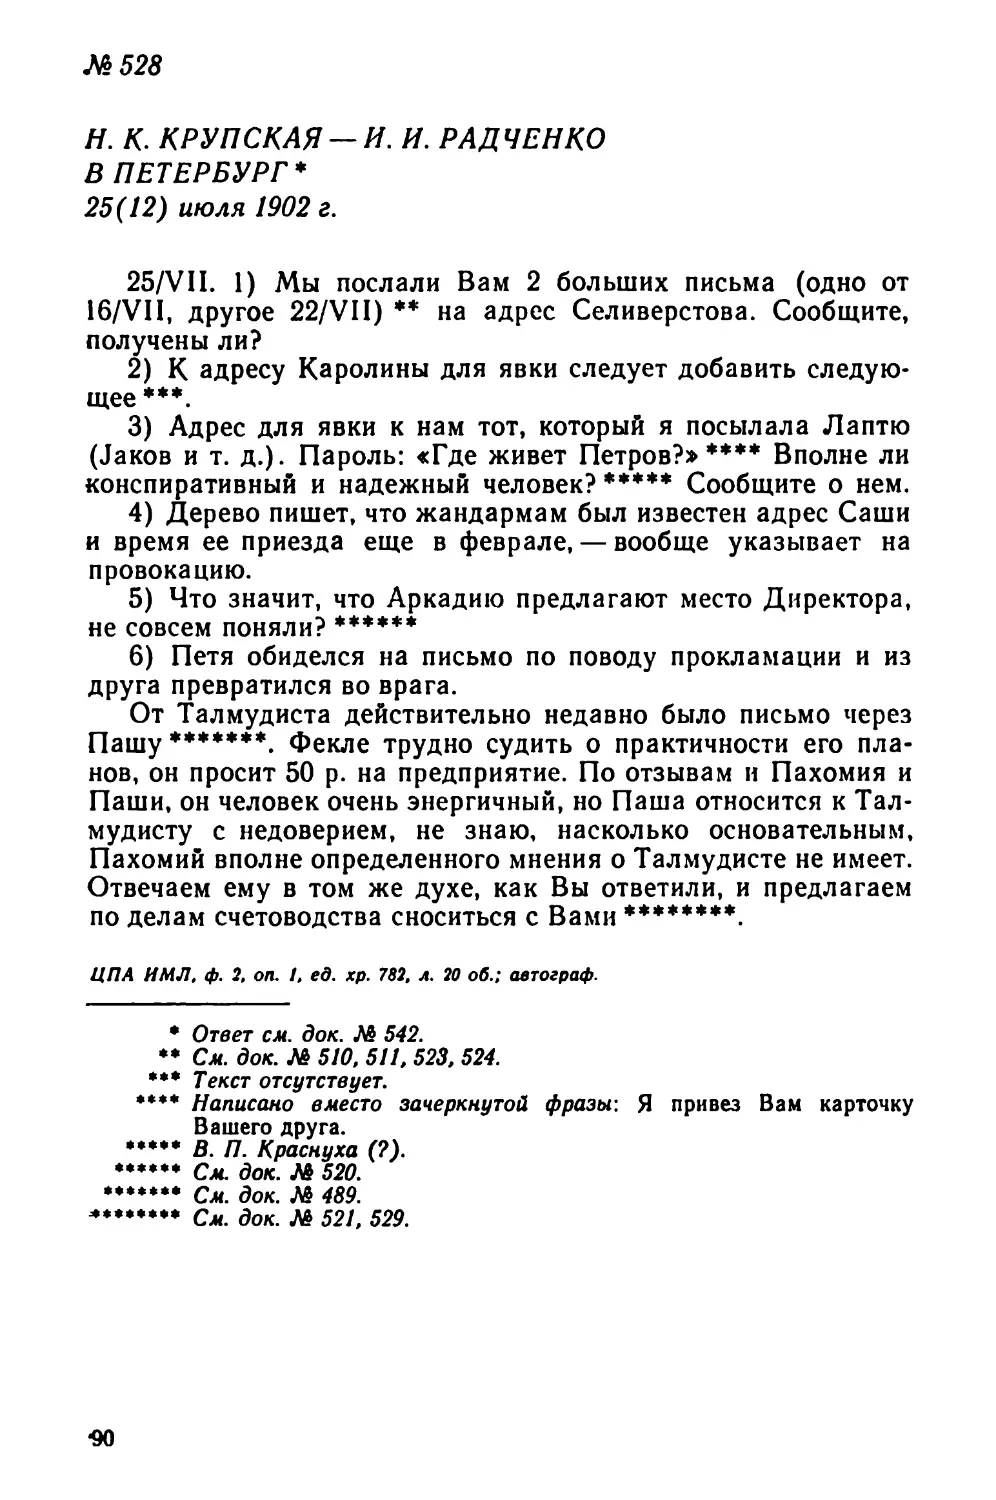 № 528 Н. К. Крупская — И. И. Радченко в Петербург. 25 июля 90